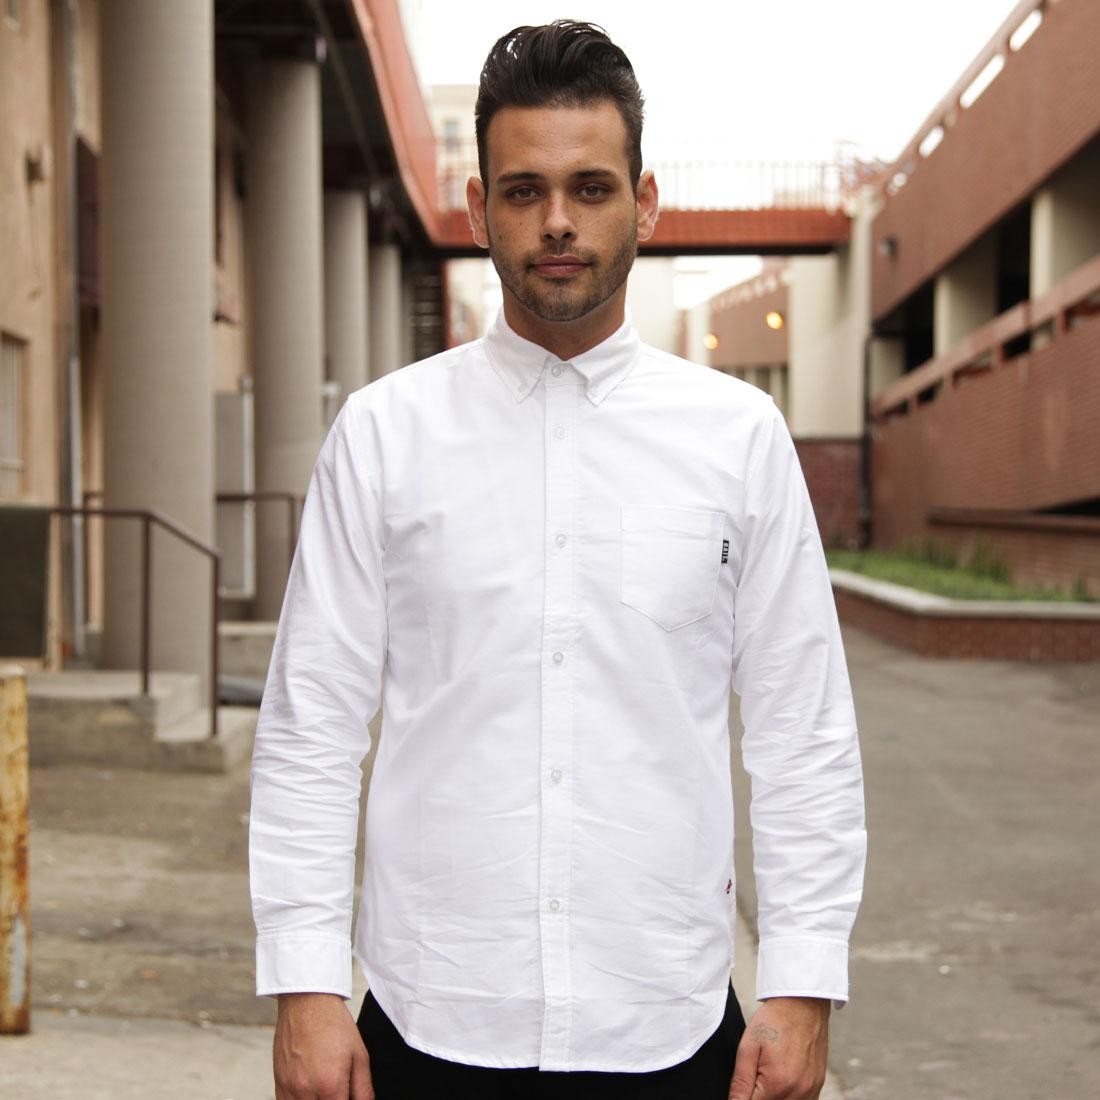 Cheap Urlfreeze Jordan Outlet Oxford Long Sleeve Contonniere shirt (white)